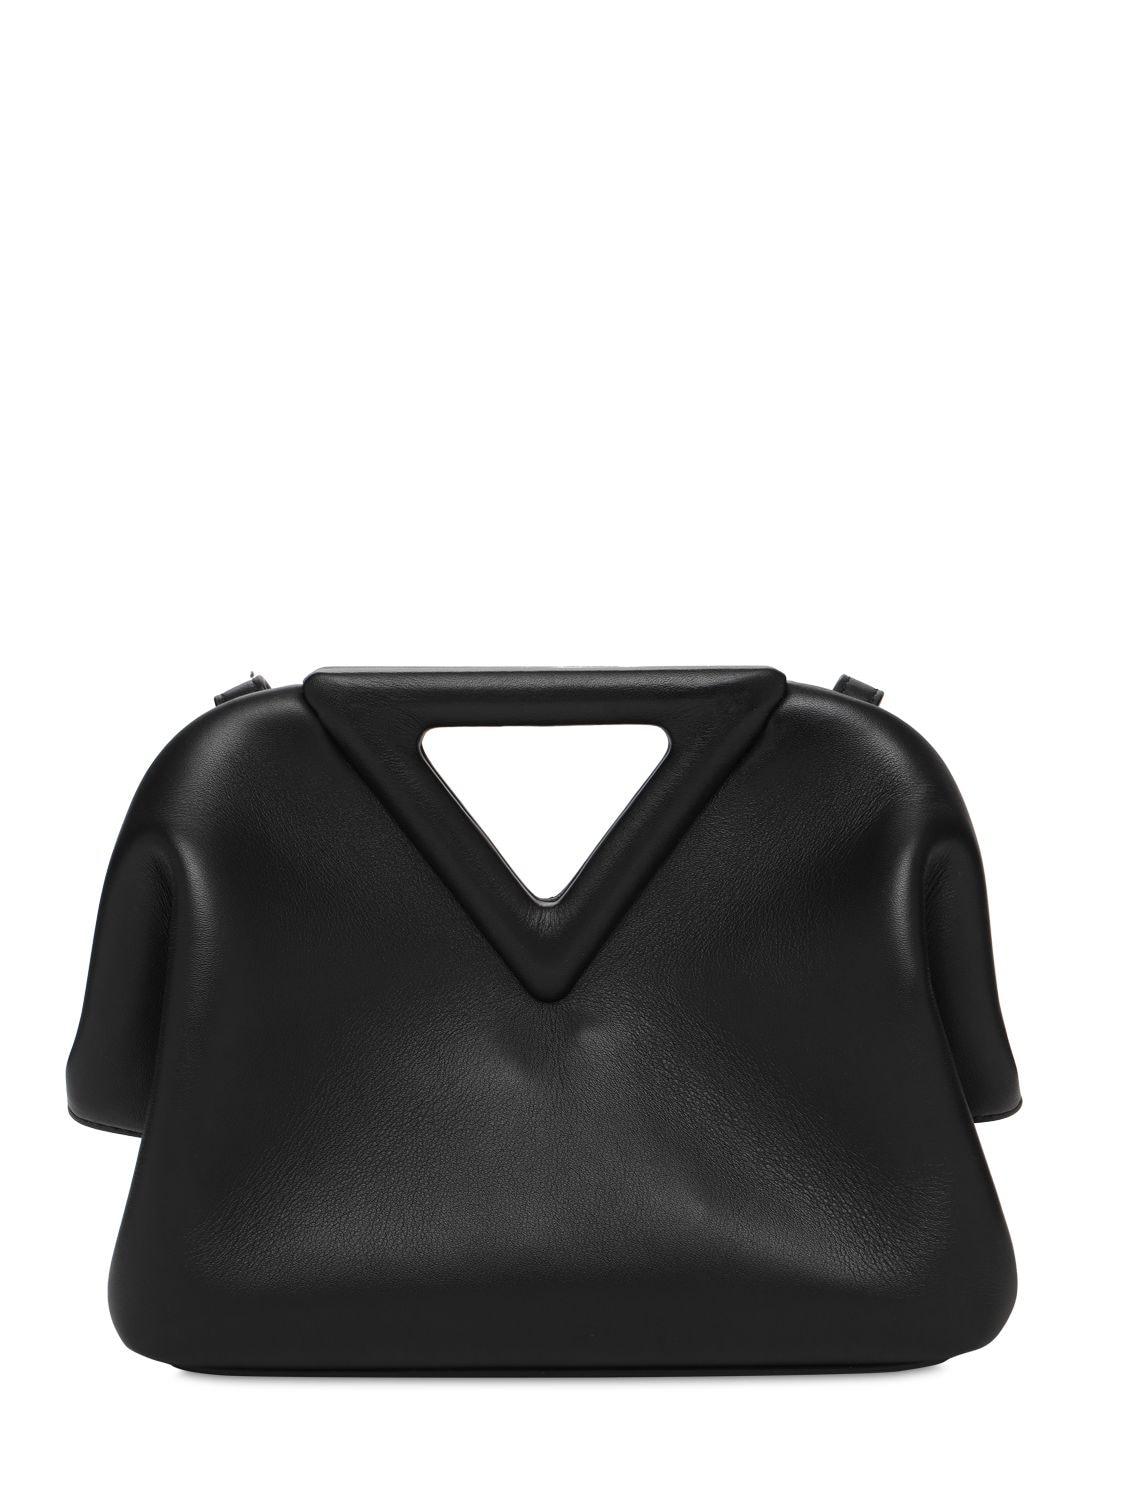 BOTTEGA VENETA Bags for Women | ModeSens